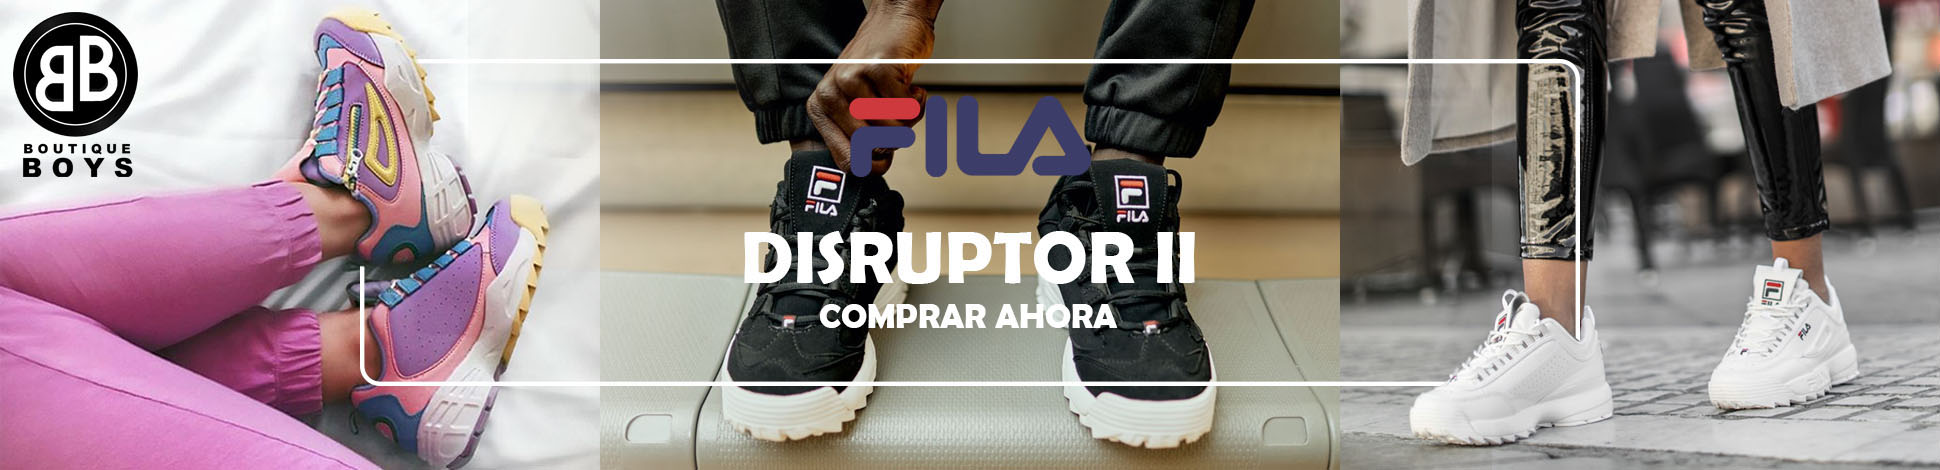 banner disruptor 1.jpg | Juntoz.com